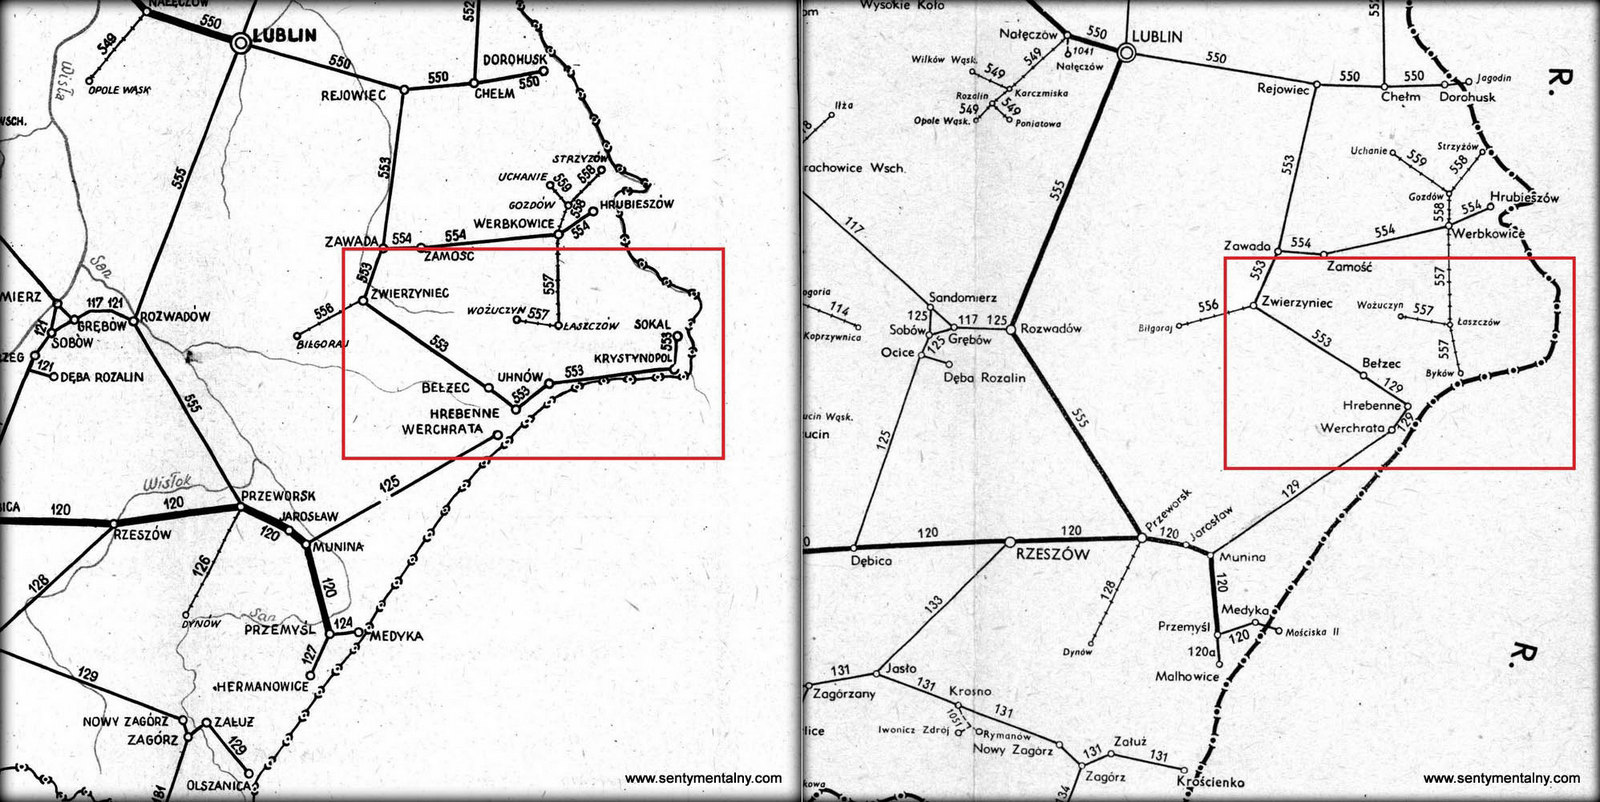 Połączenie na mapie z rozkładu jazdy, obowiązującego 1951 roku. Dojazd do Sokala czynny, jeszcze przed "korektą" granicy. Hrebenne i Werchrata jeszcze jako tymczasowe stacje końcowe. Po prawej: ołączenie na mapie z rozkładu jazdy, obowiązującego w 1958 roku. Dojazd do Sokala zamknięty, już po "korekcie" granicy. Połączenie Werchrata - Hrebenne już oddane do użytku.